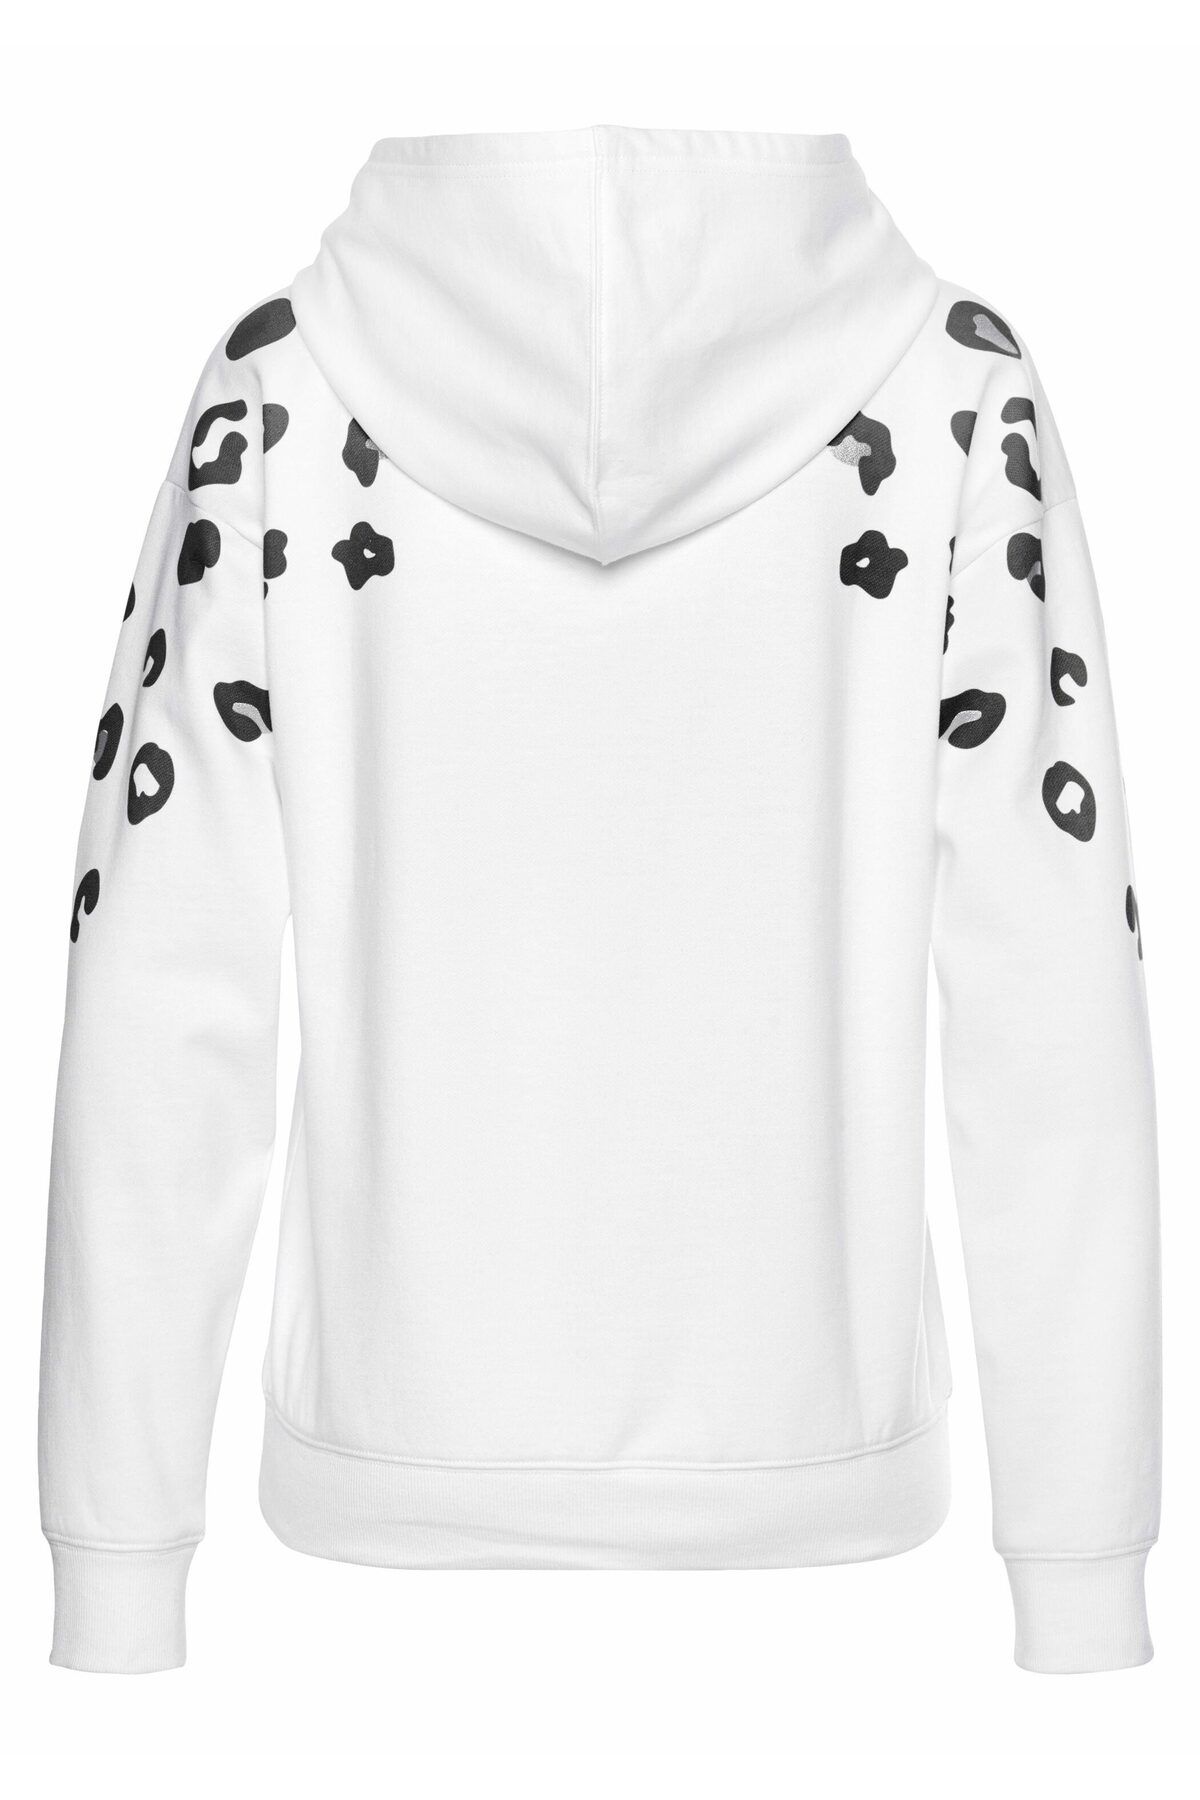 BENCH Sweatshirt - Regular - Weiß Trendyol - Fit